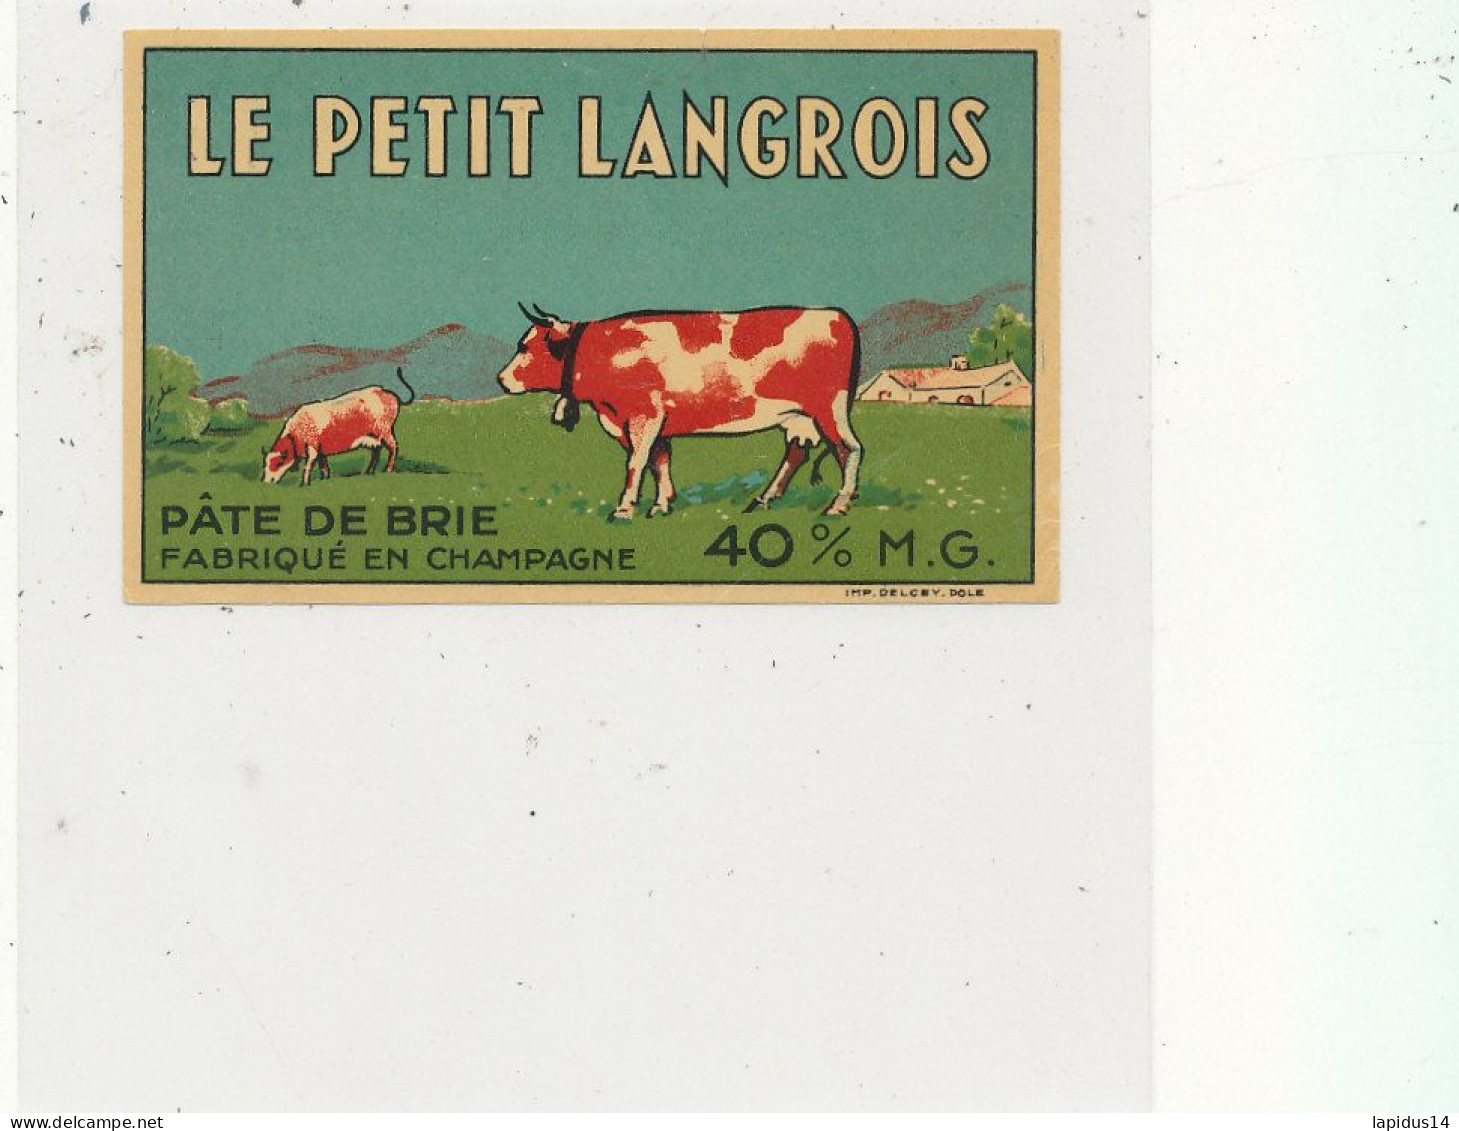 GG 435 / ETIQUETTE FROMAGE   PATE DE BRIE   LE PETIT LANGROIS  FABRIQUE EN CHAMPAGNE - Fromage